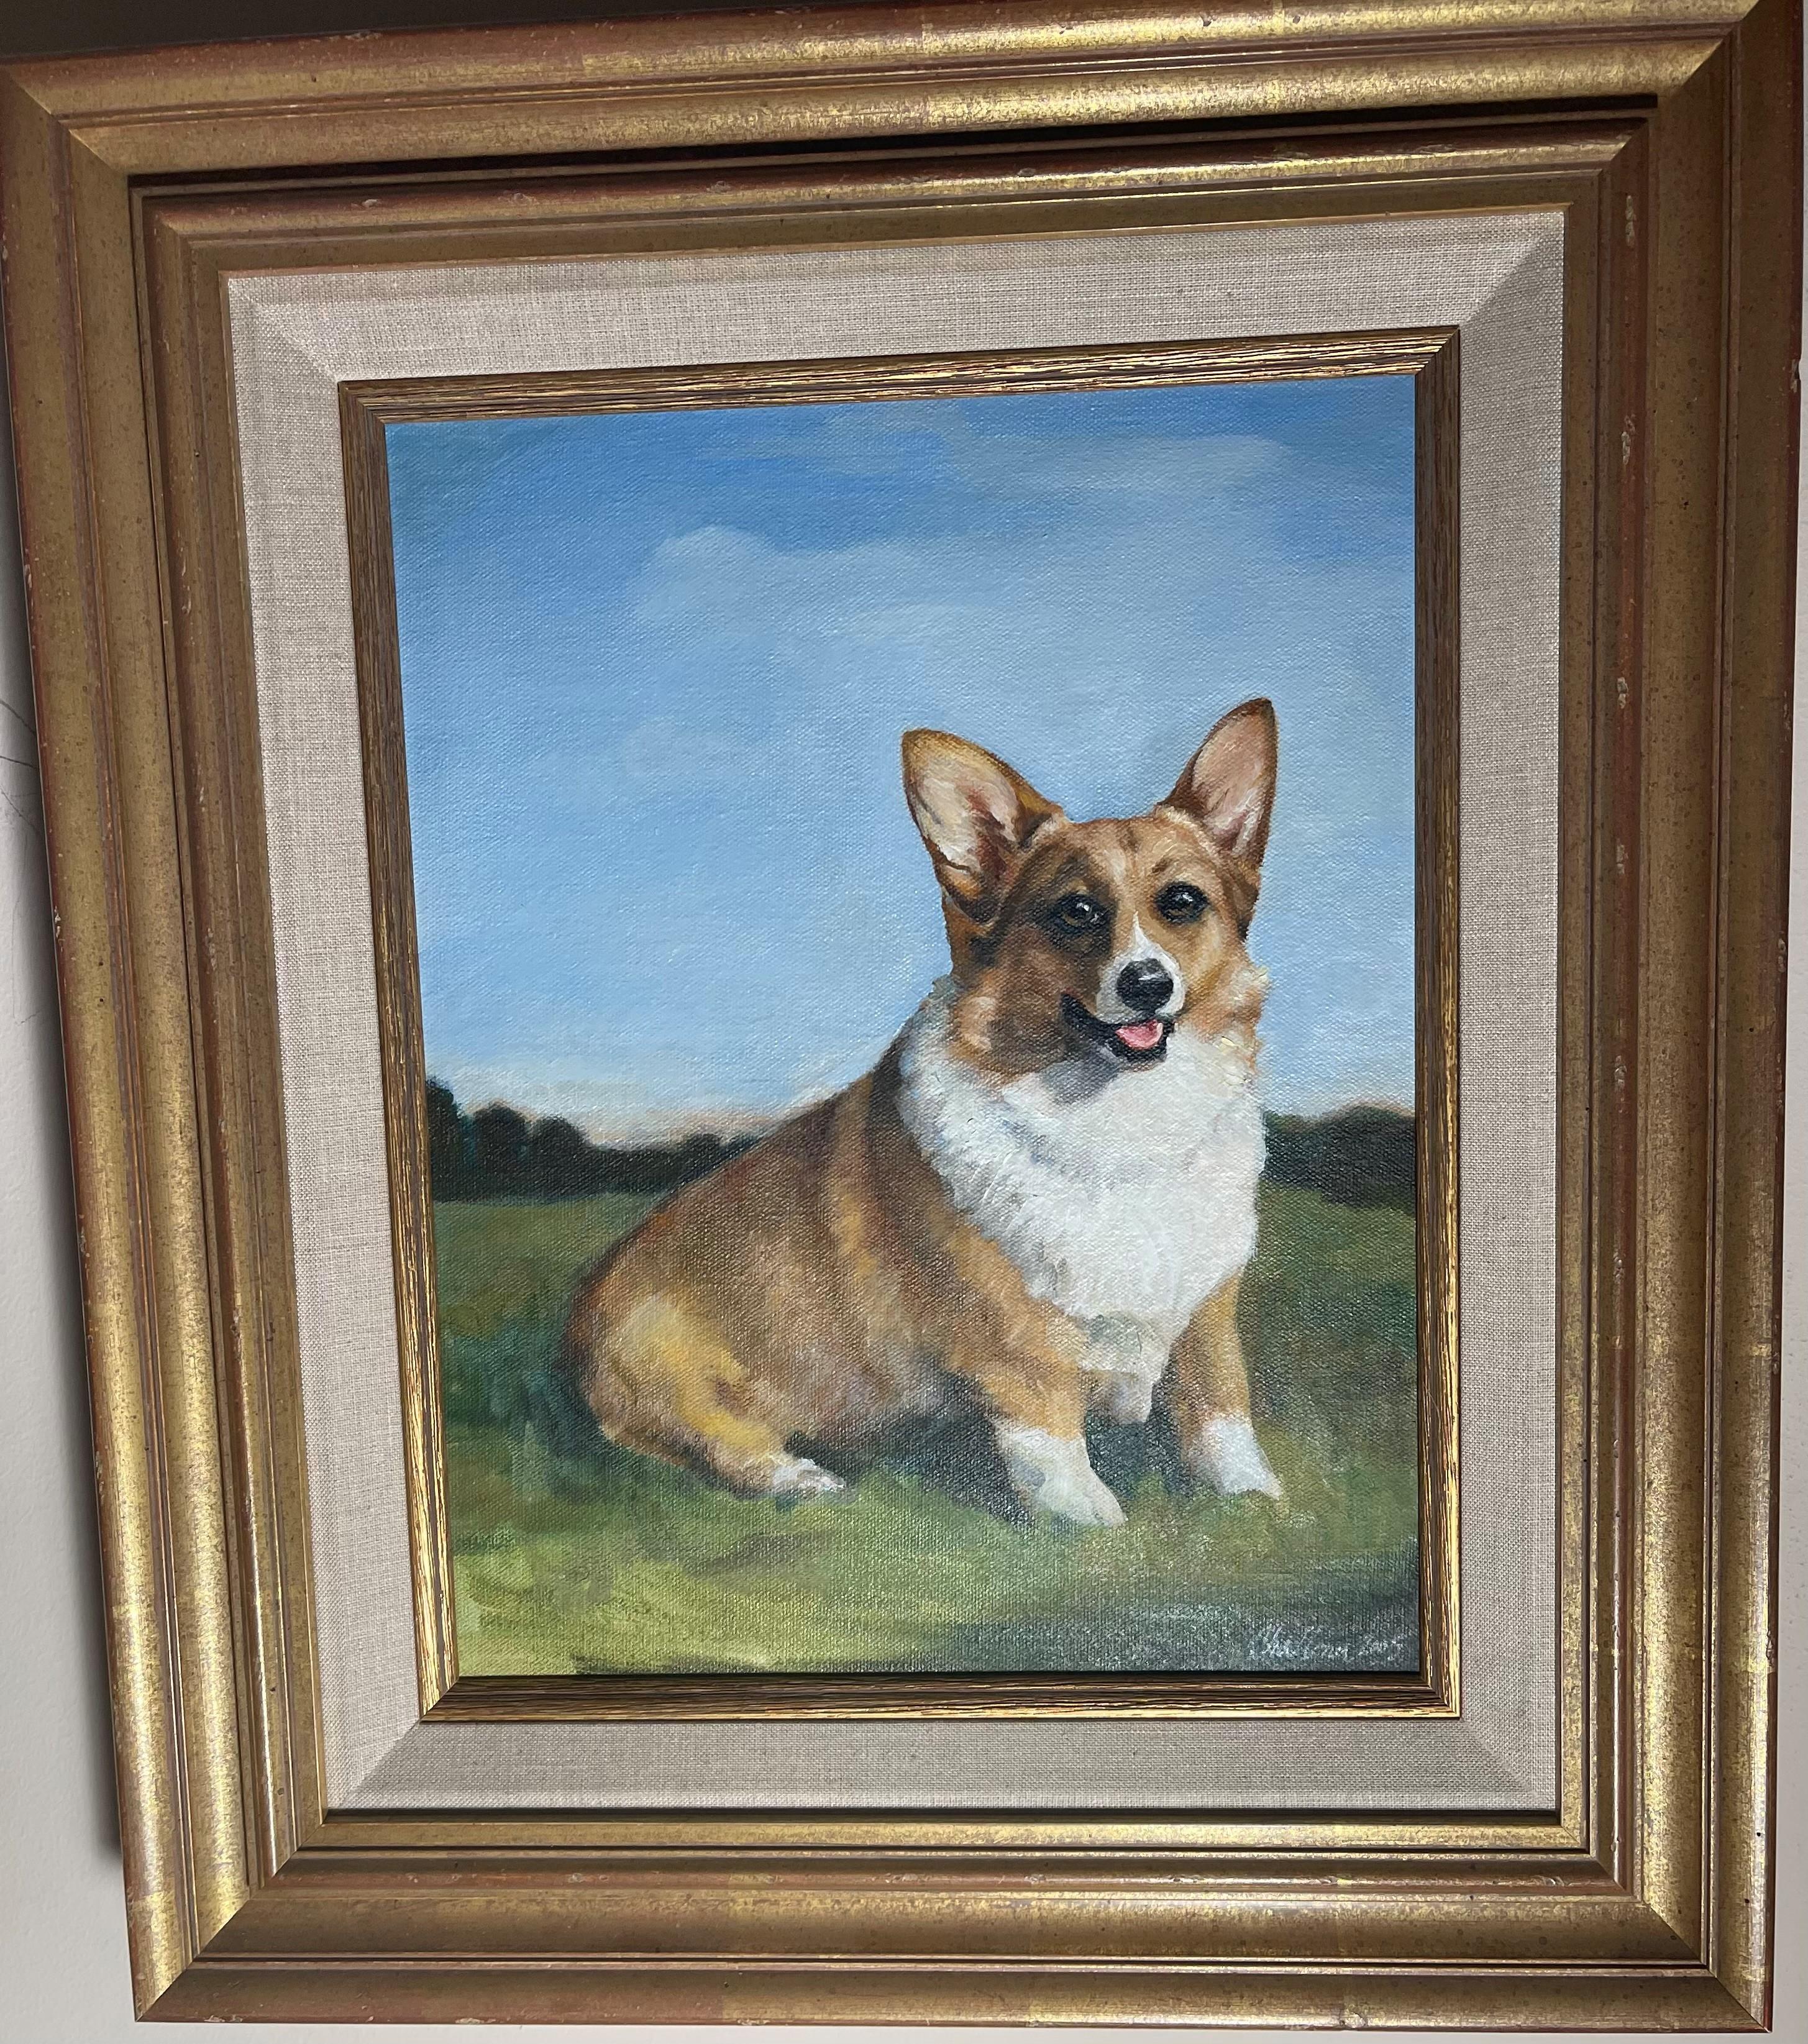 Das charmante Corgi-Gemälde von Audrey Challoner-Desjardins ist ein Muss für jeden Corgi-Liebhaber.   Audrey Challoner-Desjardins verewigt die Persönlichkeit ihrer Sujets und porträtiert in ihren Hundebildern das geliebte Haustier ihres Besitzers